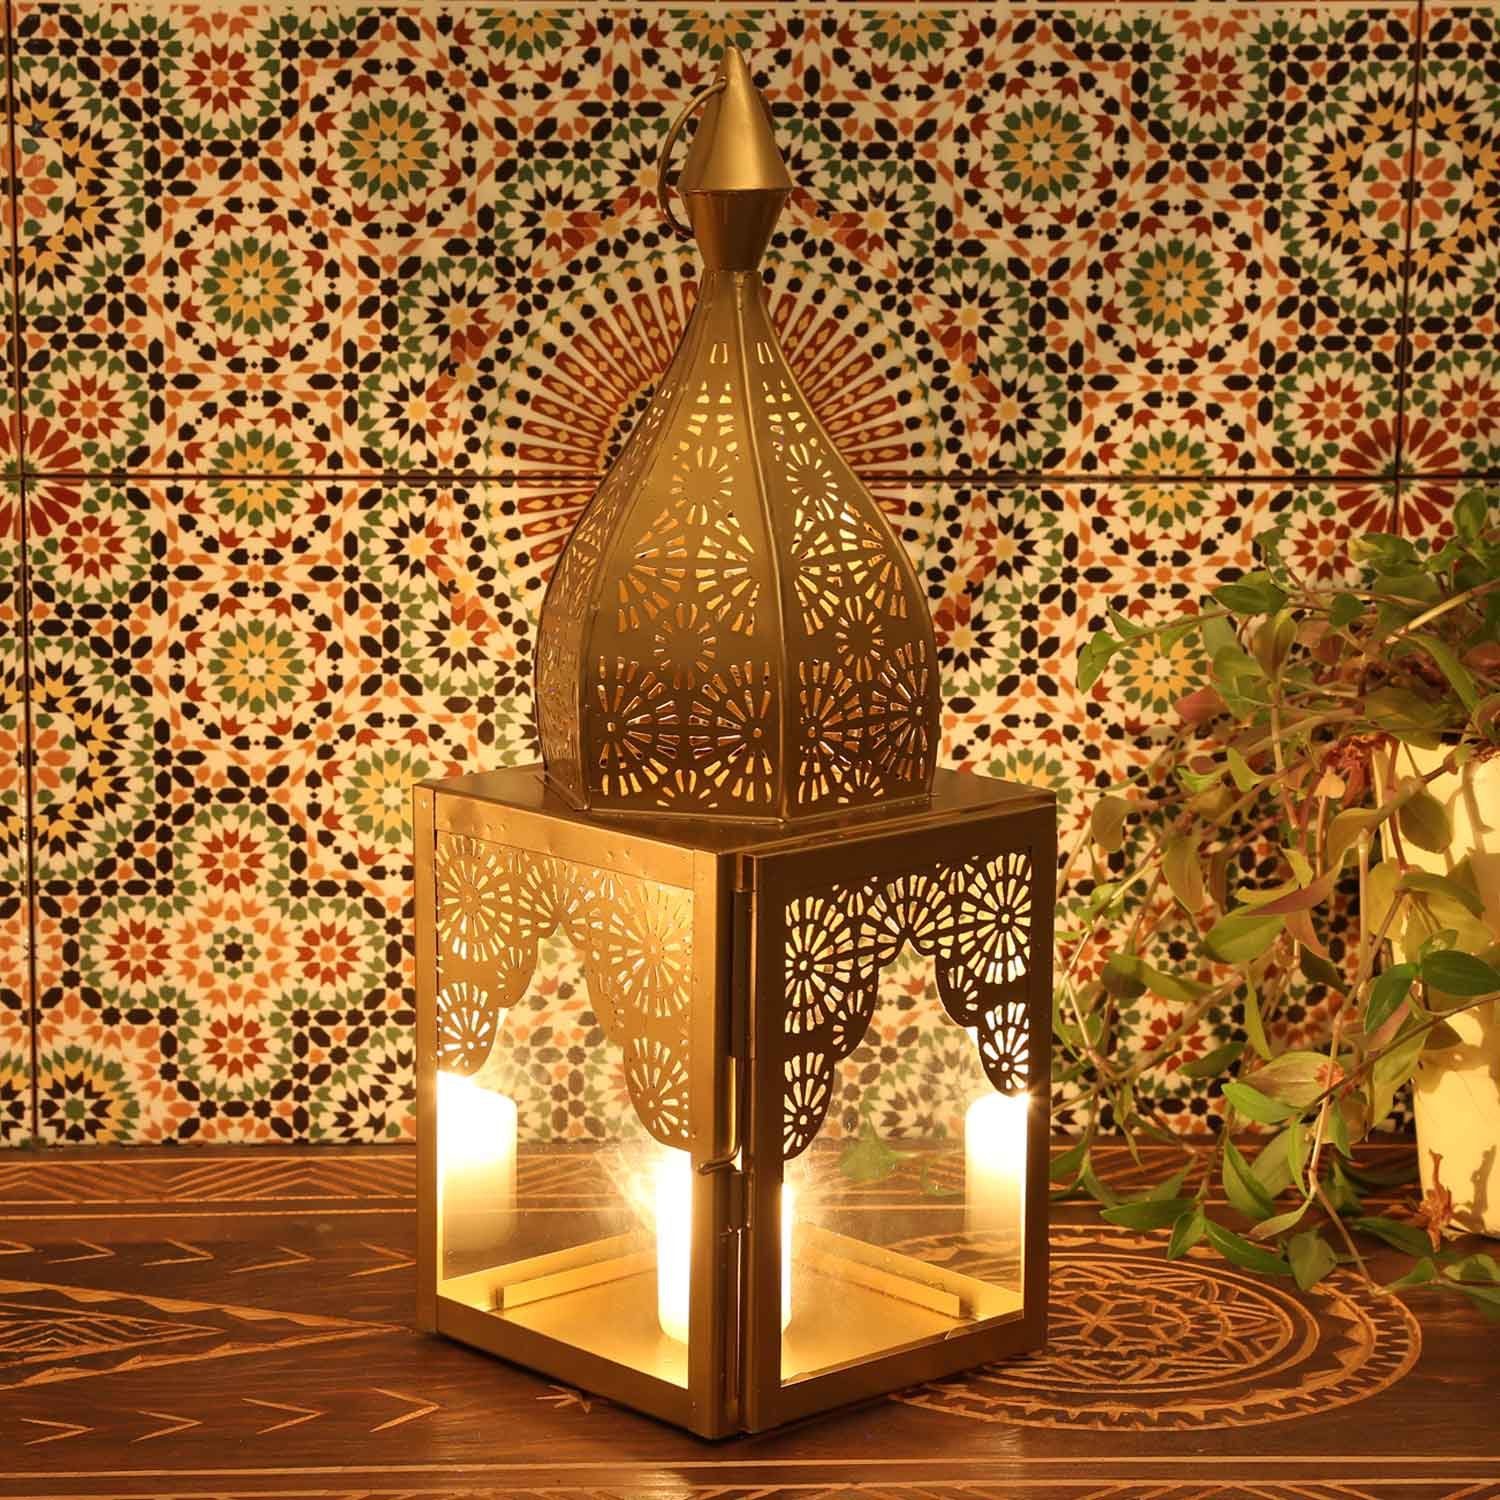 Windlicht in Form, Laterne Wohn-Deko M & Kunsthandwerk Modena Gold Metall Orientalisches Casa Weihnachten, Windlicht Glas 45cm Moro IRL650, aus Minaretten Marokkanische Kerzenhalter, Höhe